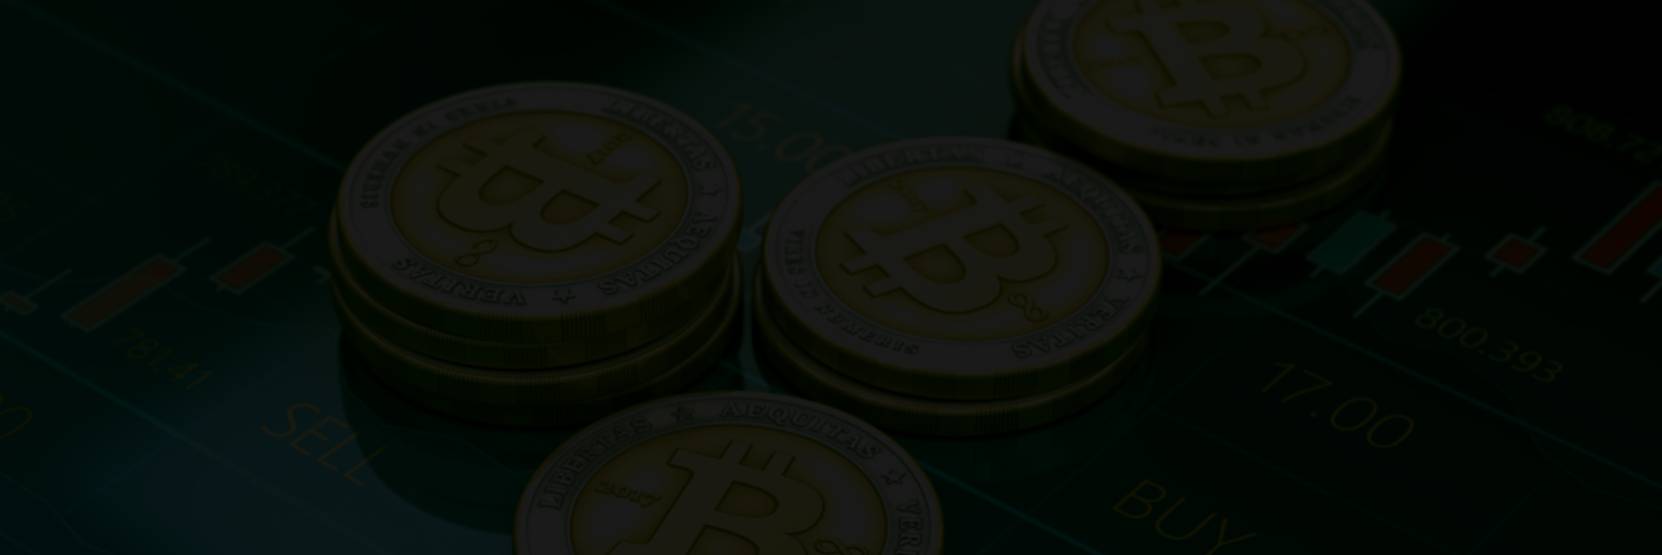 Bitcoin Treasure - Hakbang 1